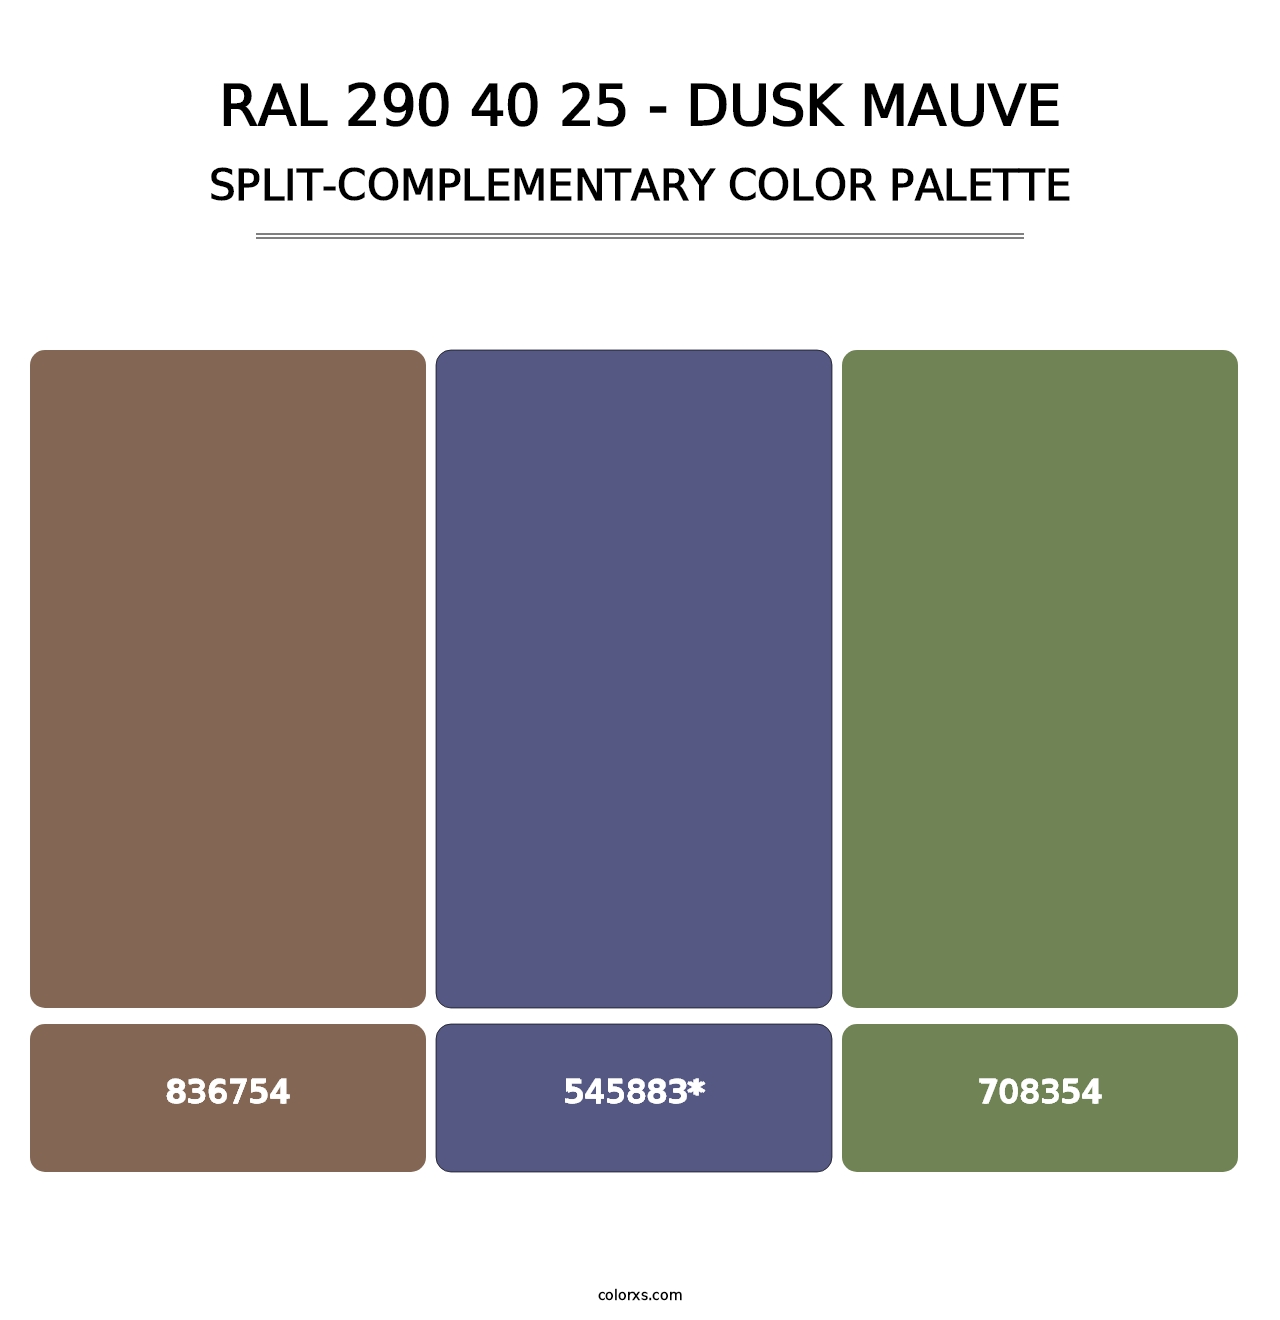 RAL 290 40 25 - Dusk Mauve - Split-Complementary Color Palette